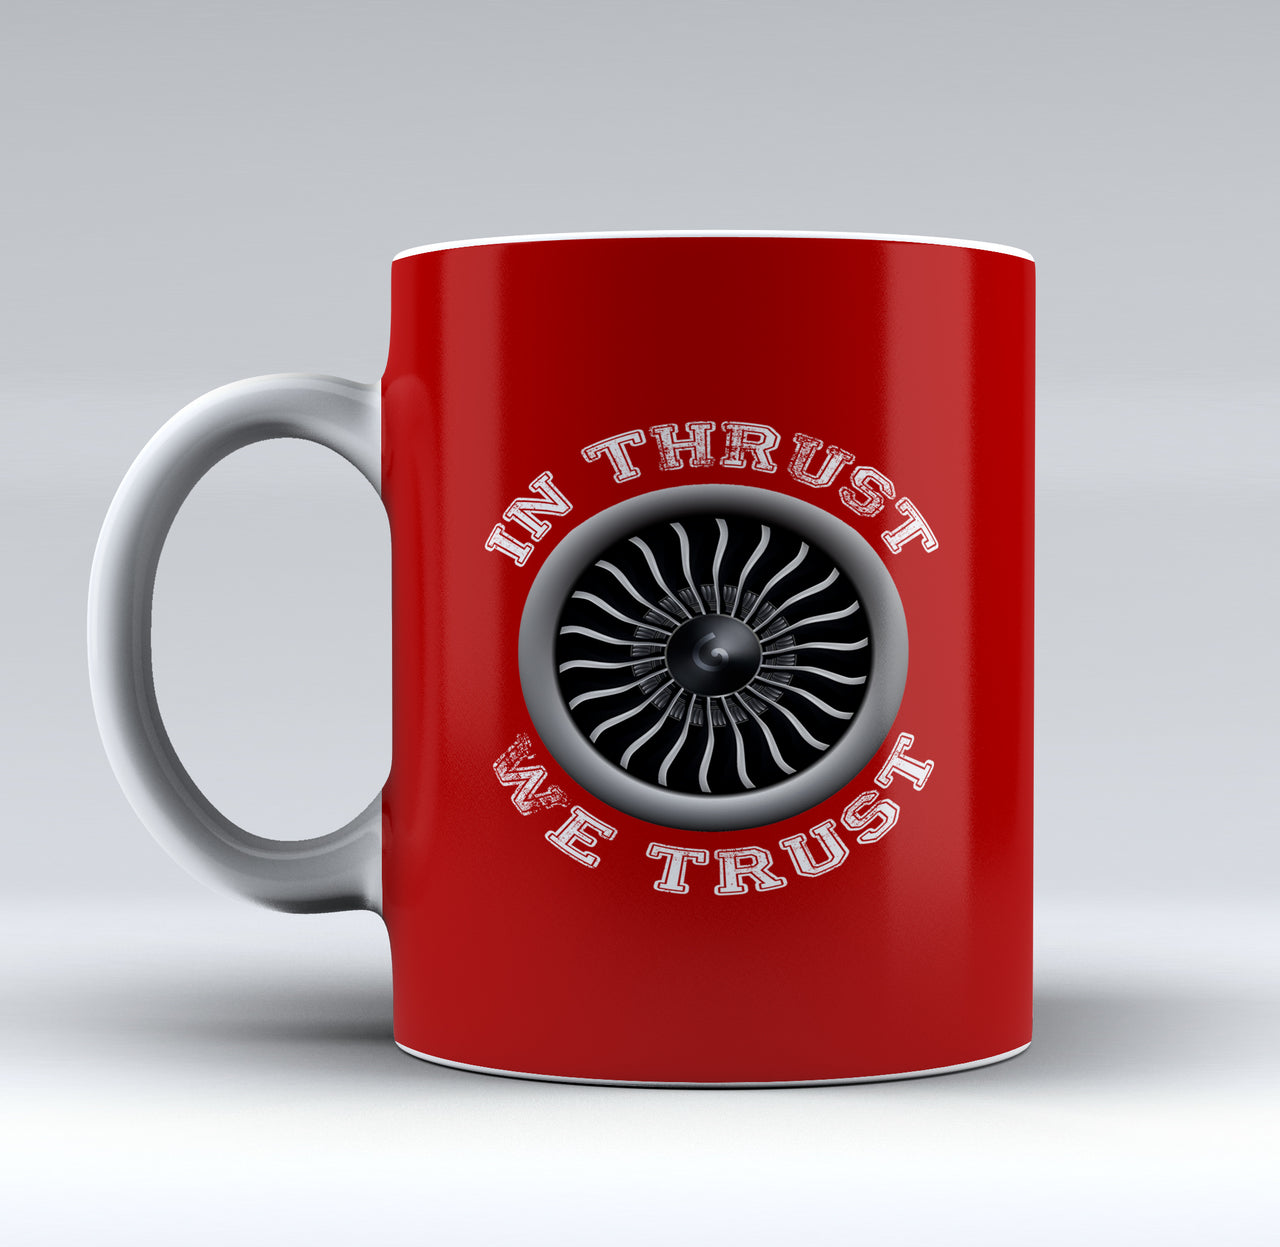 In Thrust We Trust (Vol 2) Designed Mugs